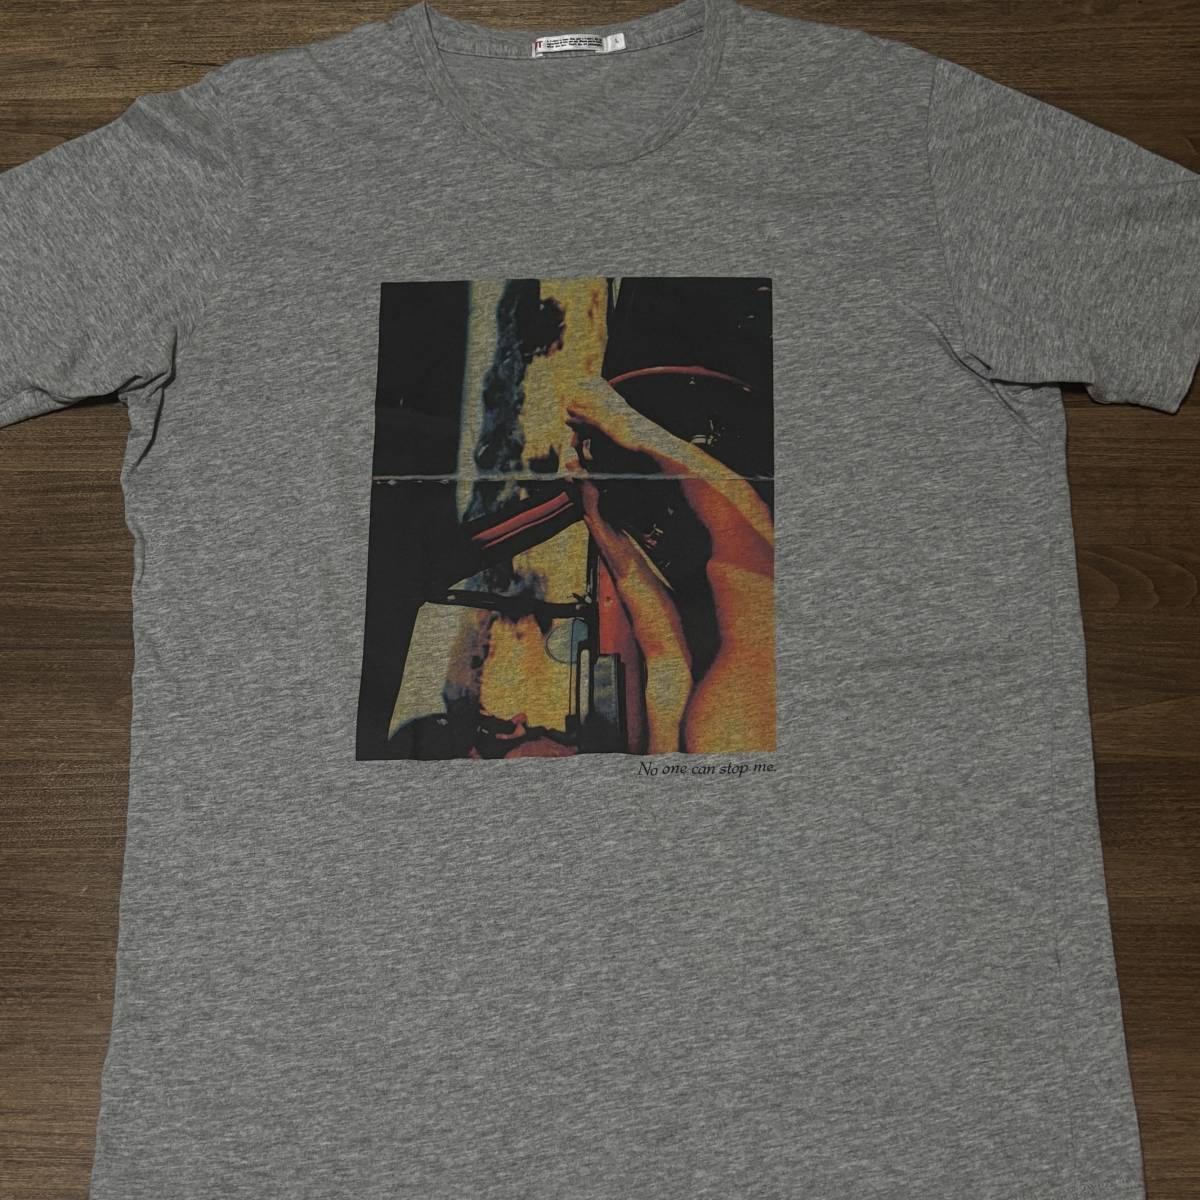 ◎(ユニクロ) ヴィンセント・ギャロ No One Can Stop M Tシャツ UT Vincent Gallo T-shirt_画像1